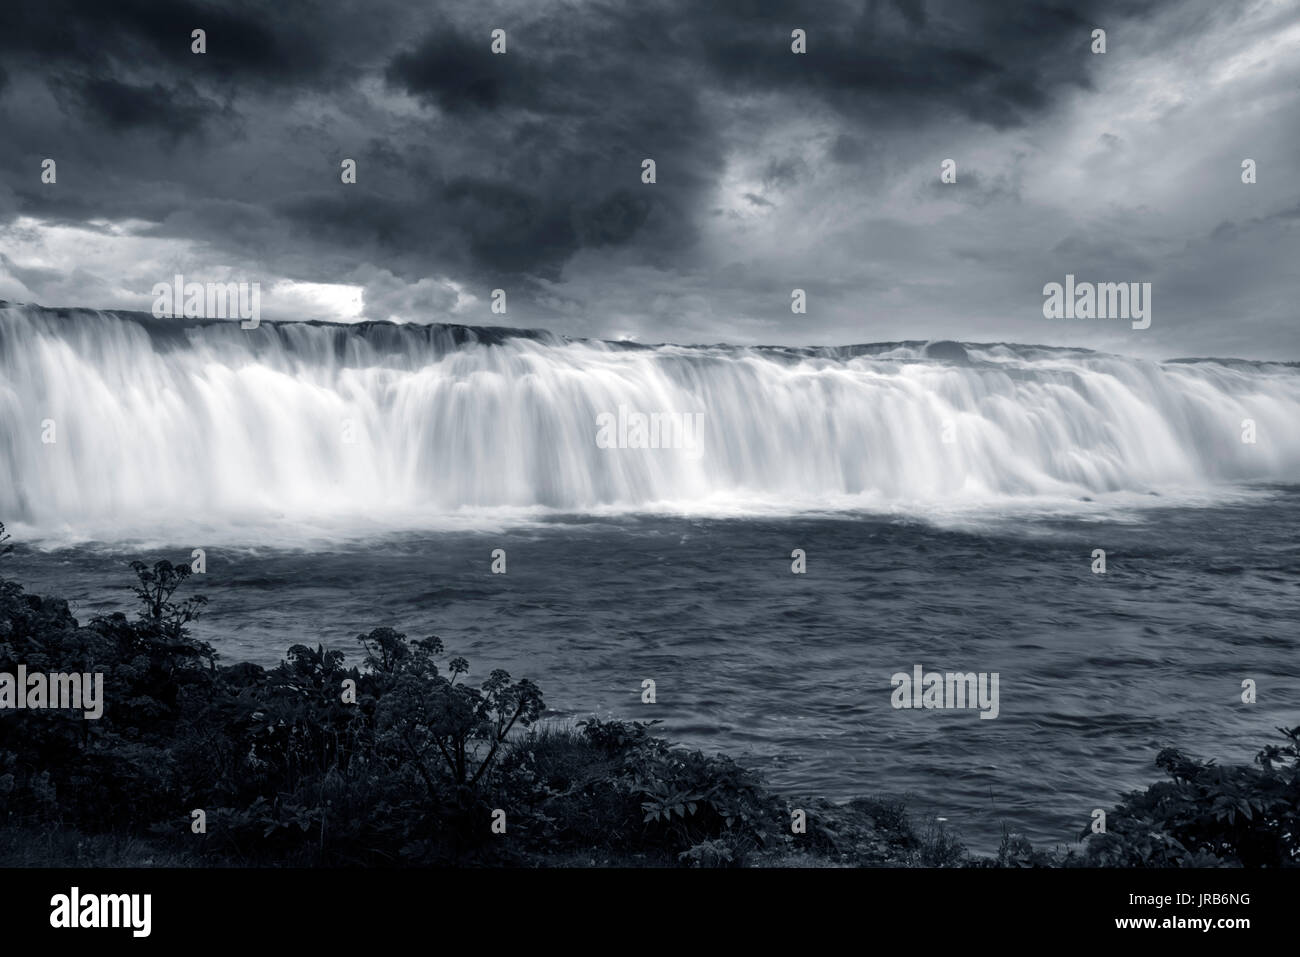 Eine Exposition in Schwarz und Weiß, der Faxi Wasserfall in Island. Stockfoto